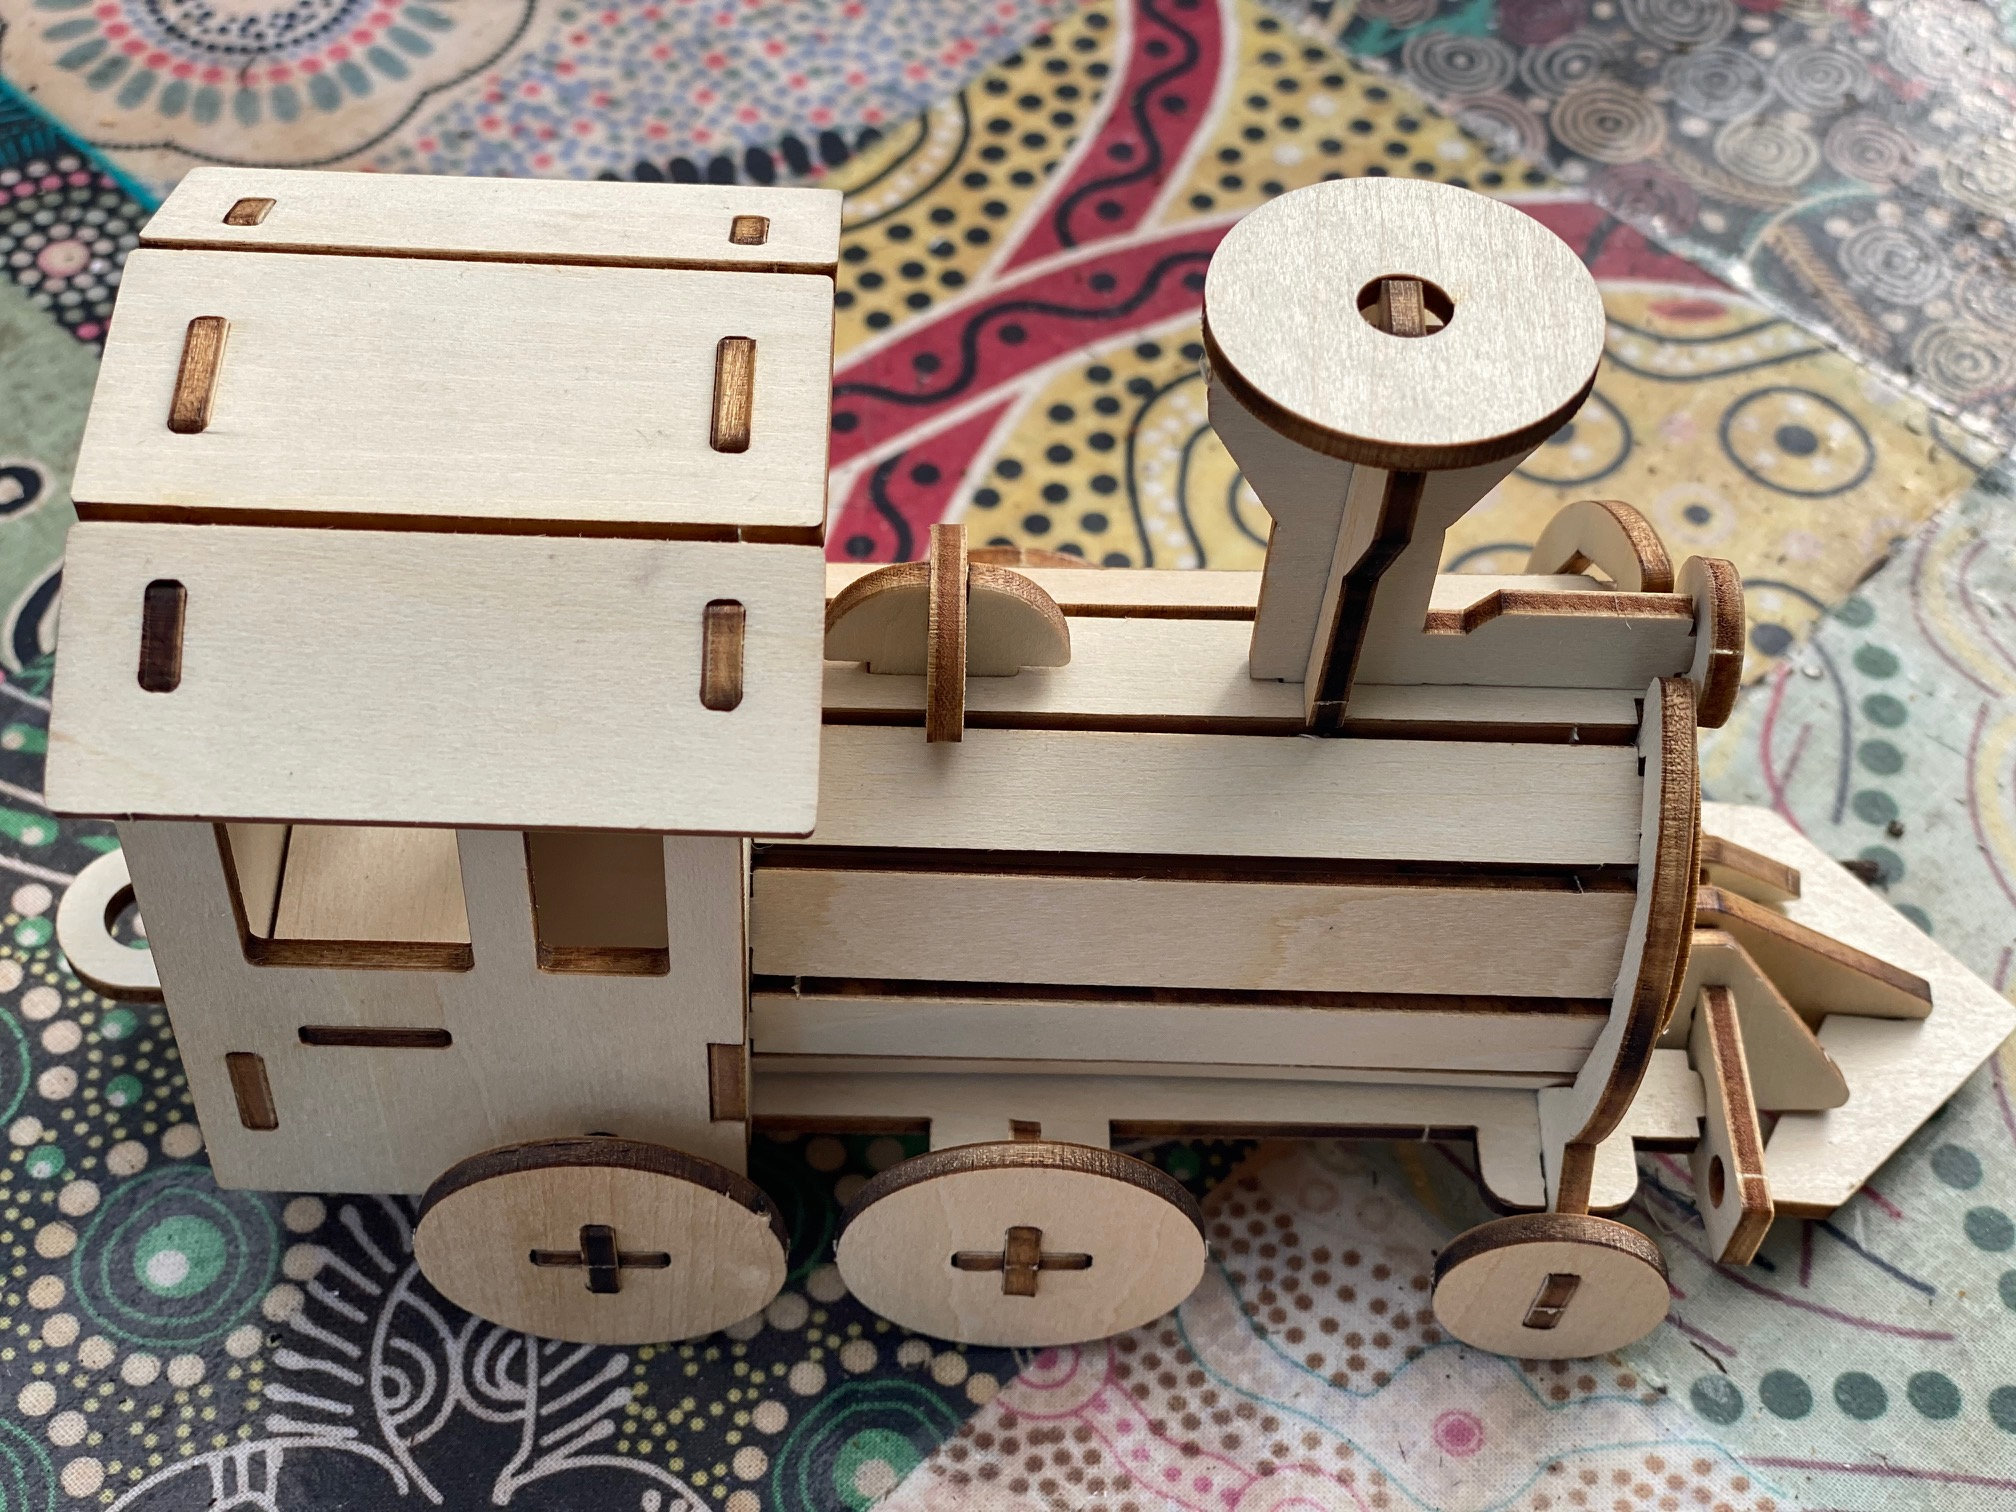 Construir y pintar su propio tren locomotora Niños modelo madera